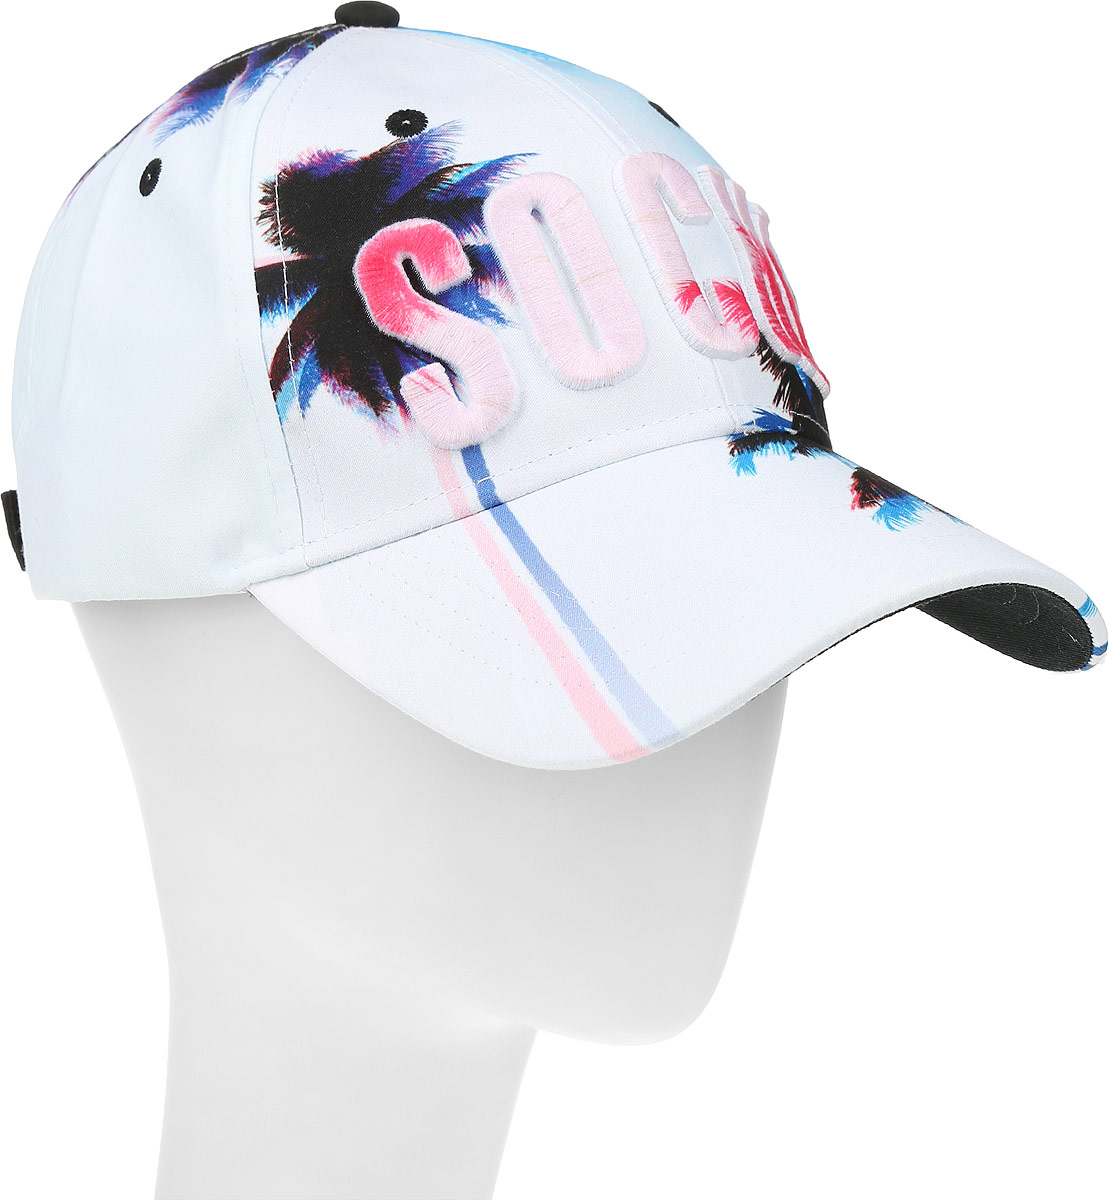 Бейсболка Robin Ruth Sochi, цвет: белый, синий, розовый. CRUS102-A. Размер универсальный